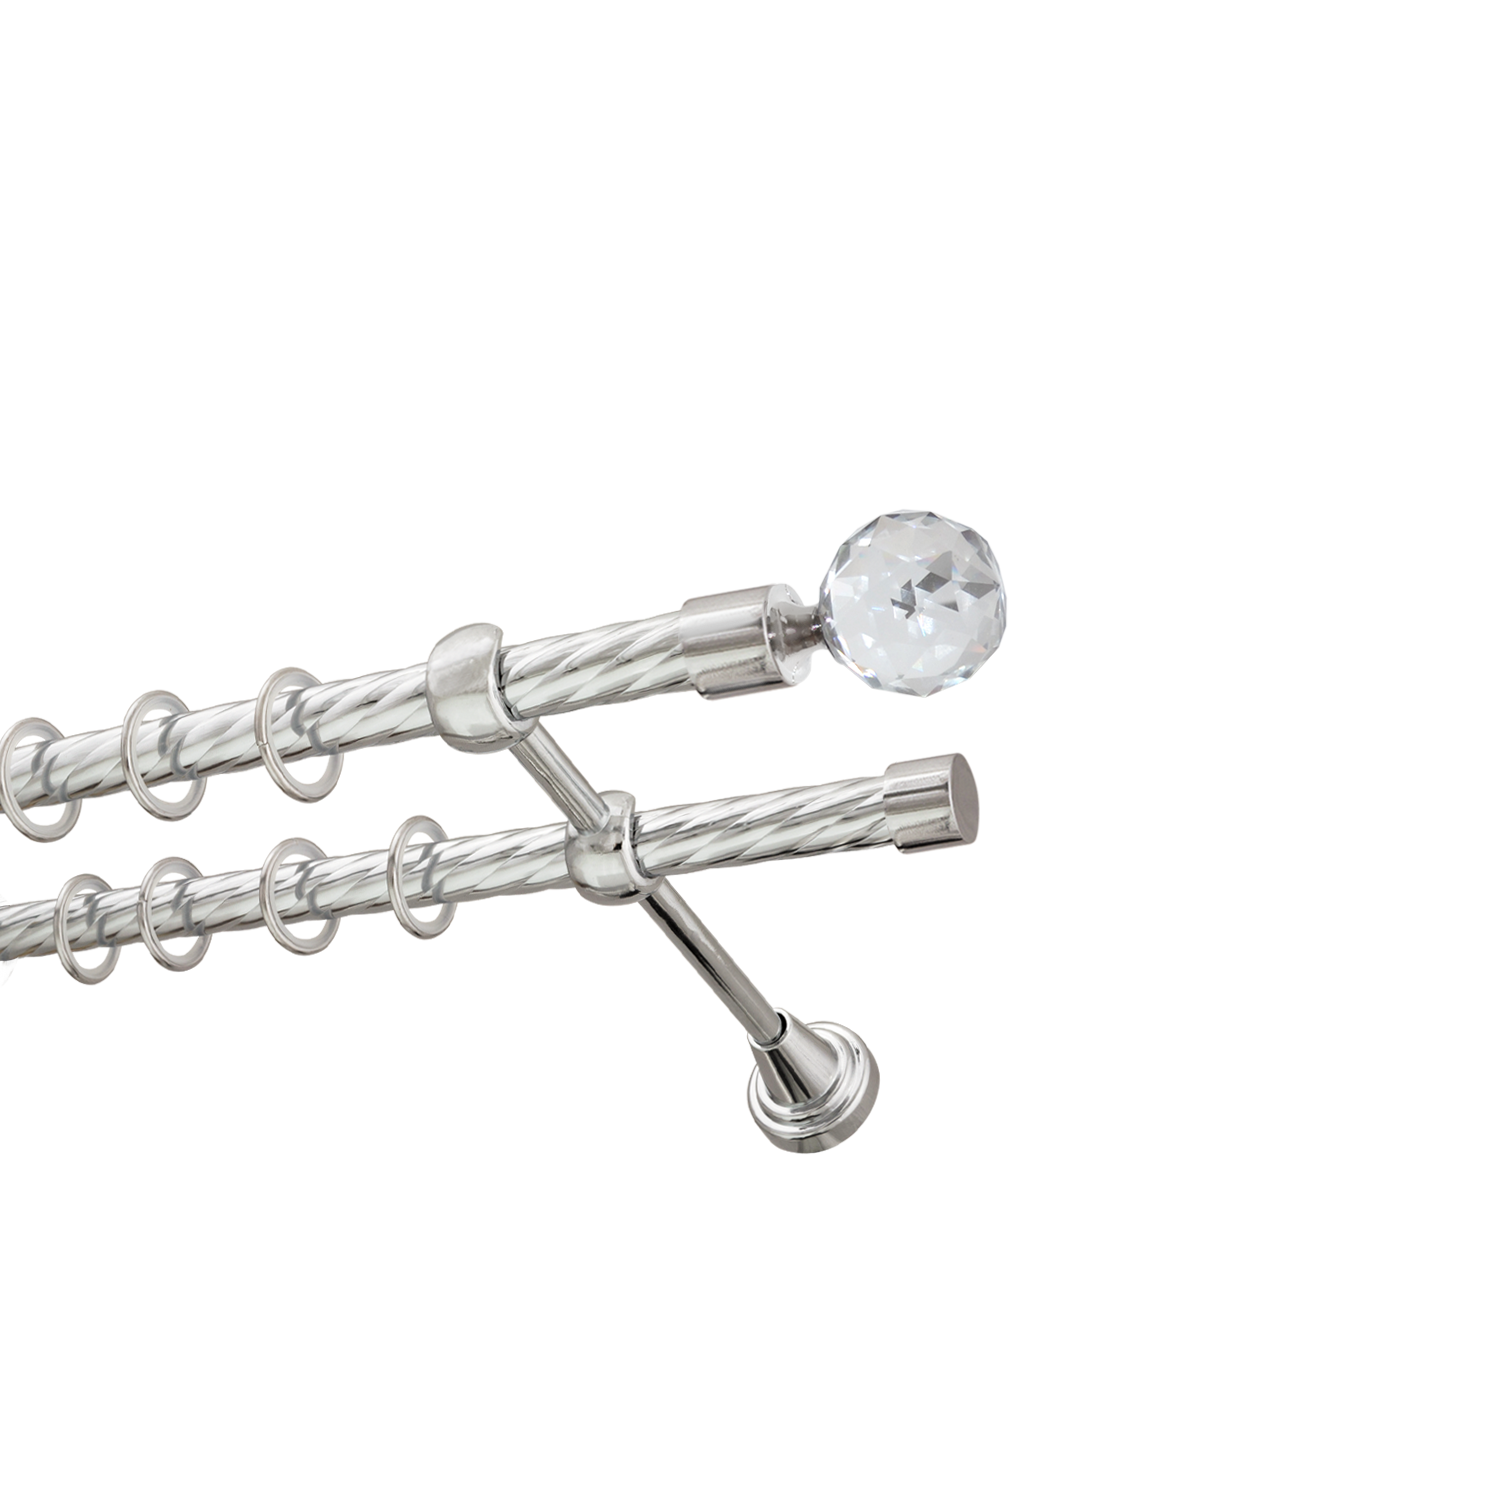 Металлический карниз для штор Карат, двухрядный 16/16 мм, серебро, витая штанга, длина 240 см